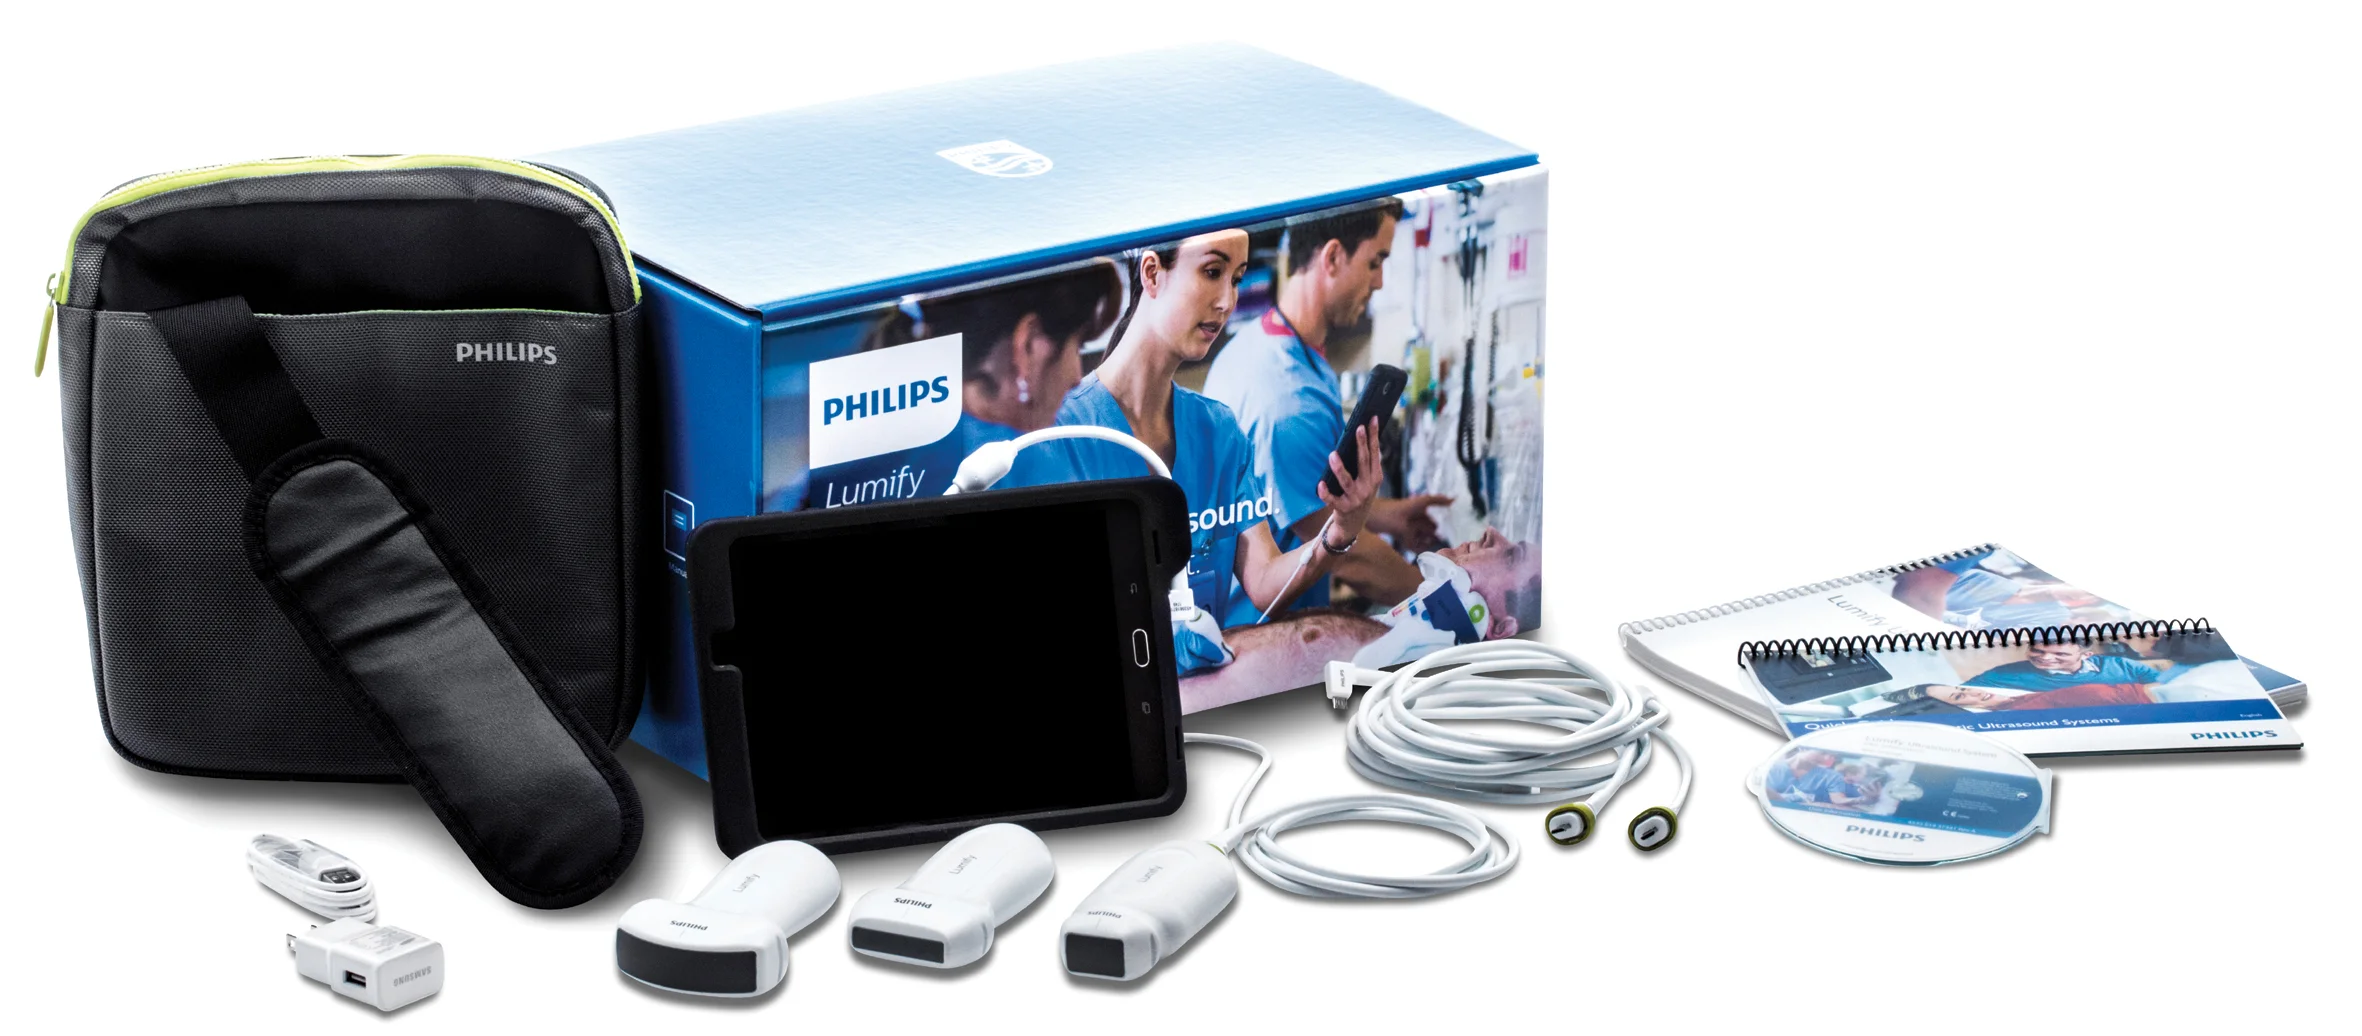 philips-lumify-equipment